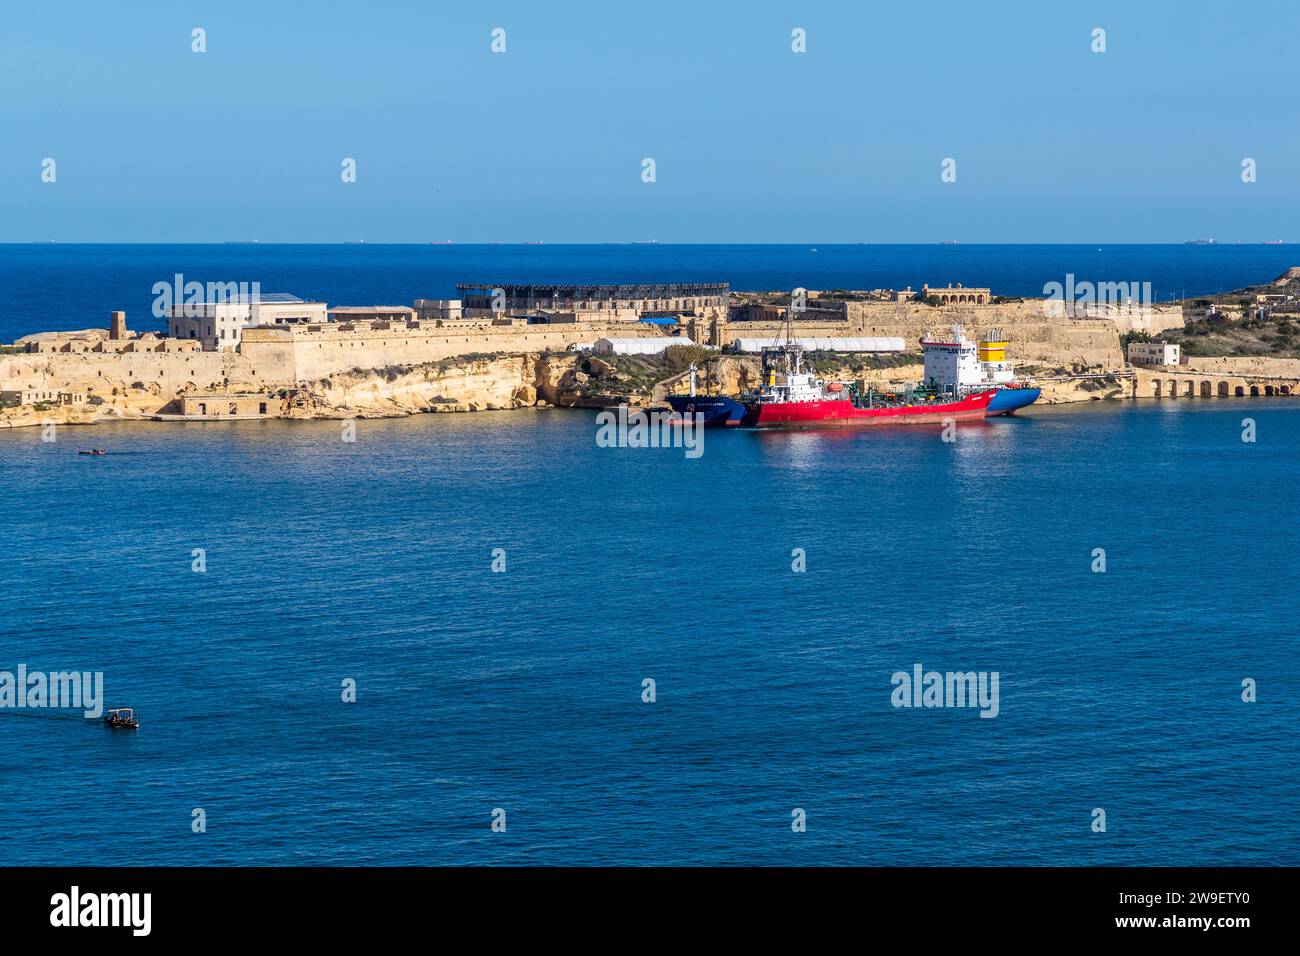 La Malta Film Commission si trova sulla penisola di Fort Ricasoli, dove vengono girati molti film internazionali. La Valletta, Malta Foto Stock